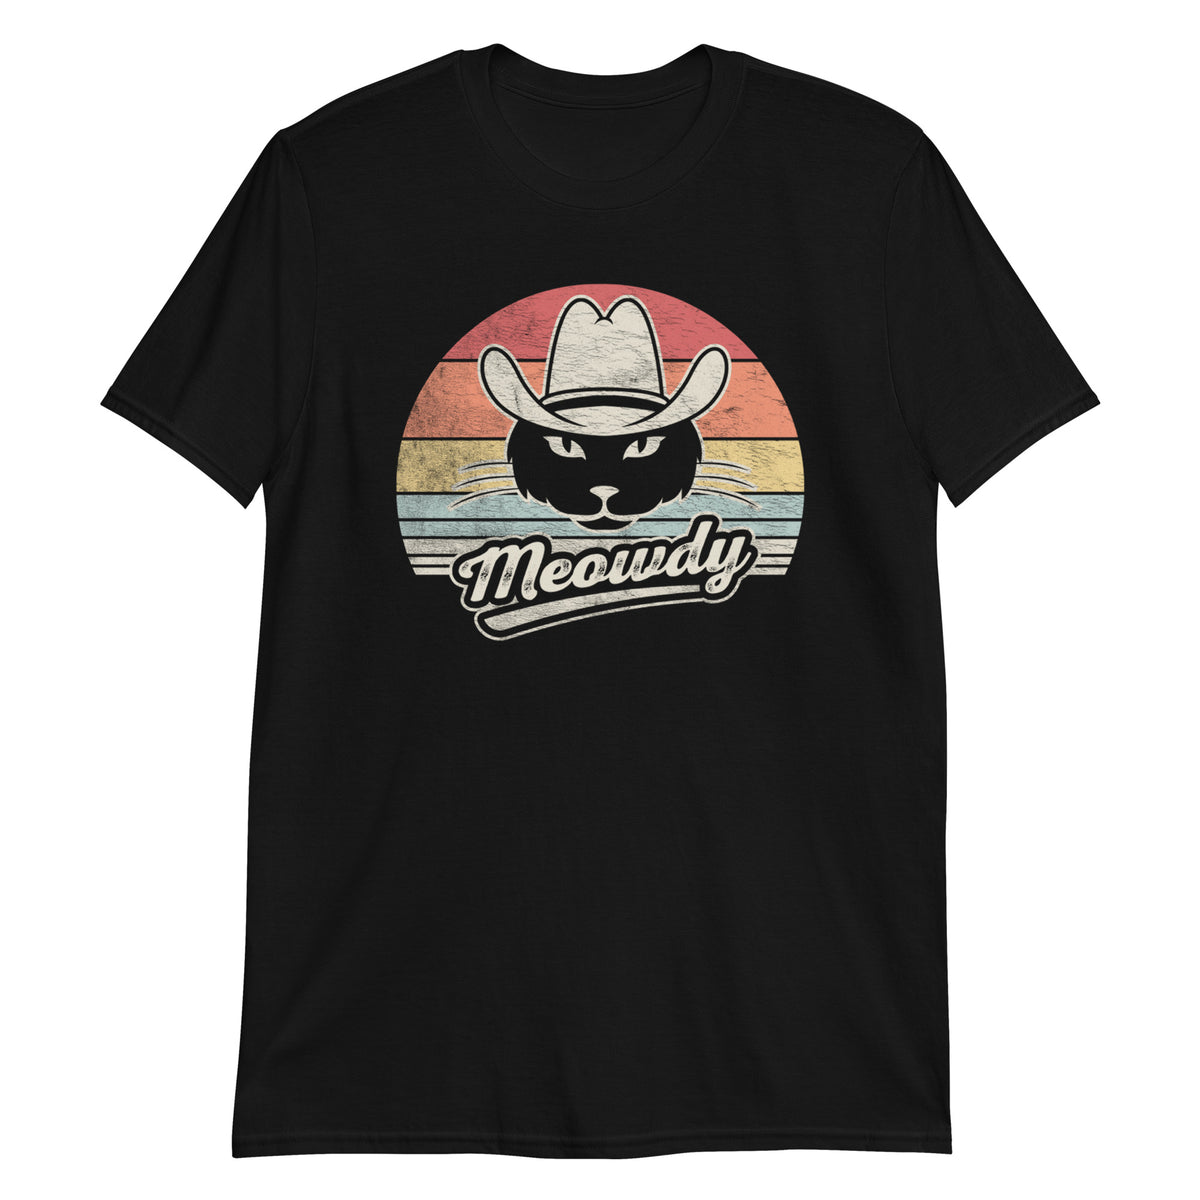 Meowdy T-Shirt